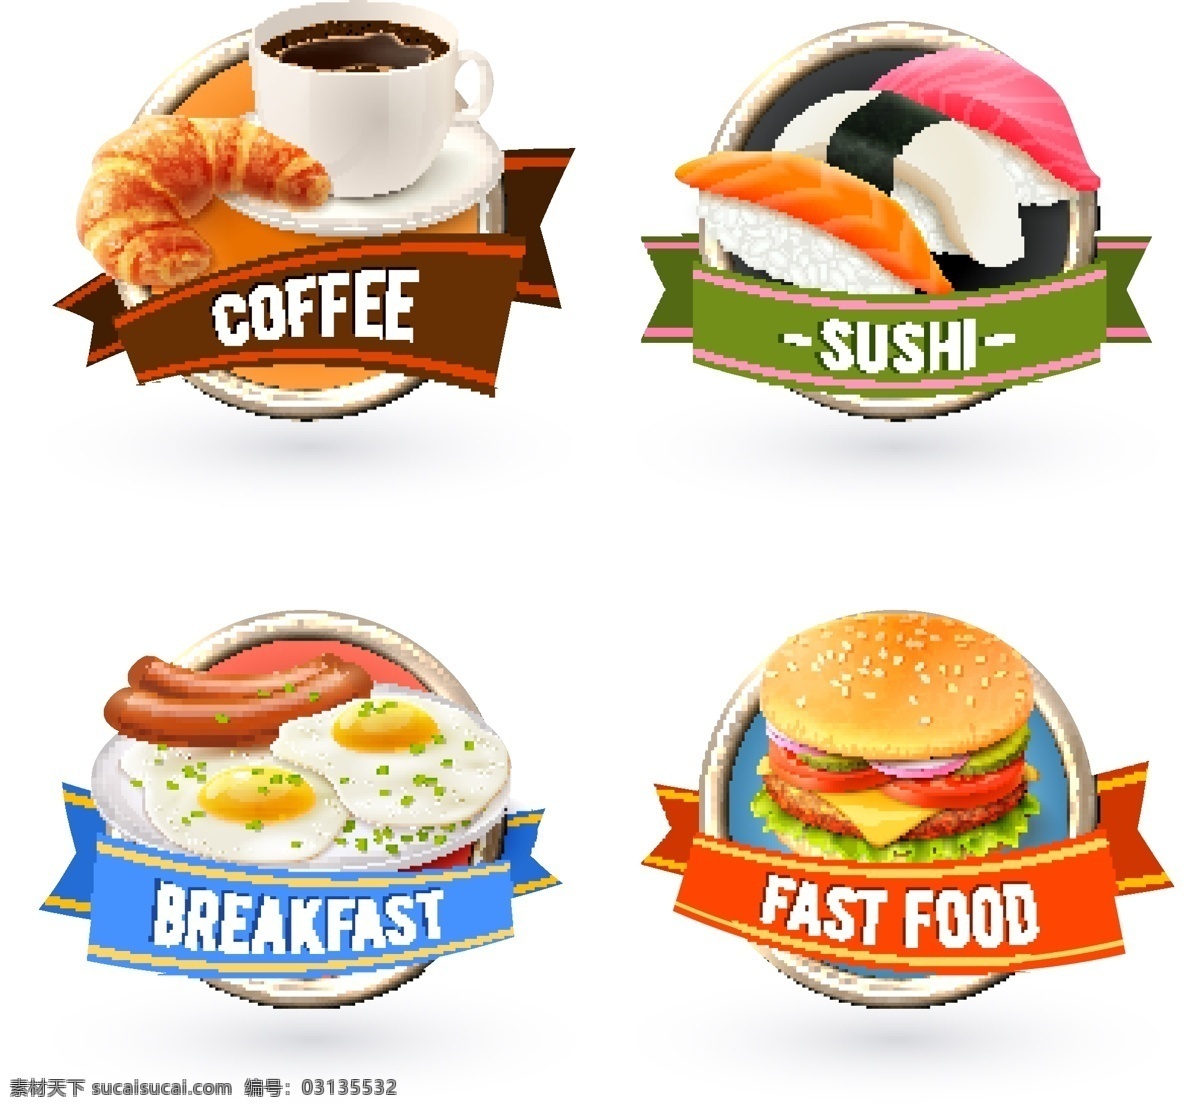 精美快餐美食 标签设计 矢量素材 咖啡 面包 汉堡包 快餐美食 寿司 鸡蛋 搜狐 荷包蛋 餐饮美食 食物图标 标签标识 标志图标 其他图标